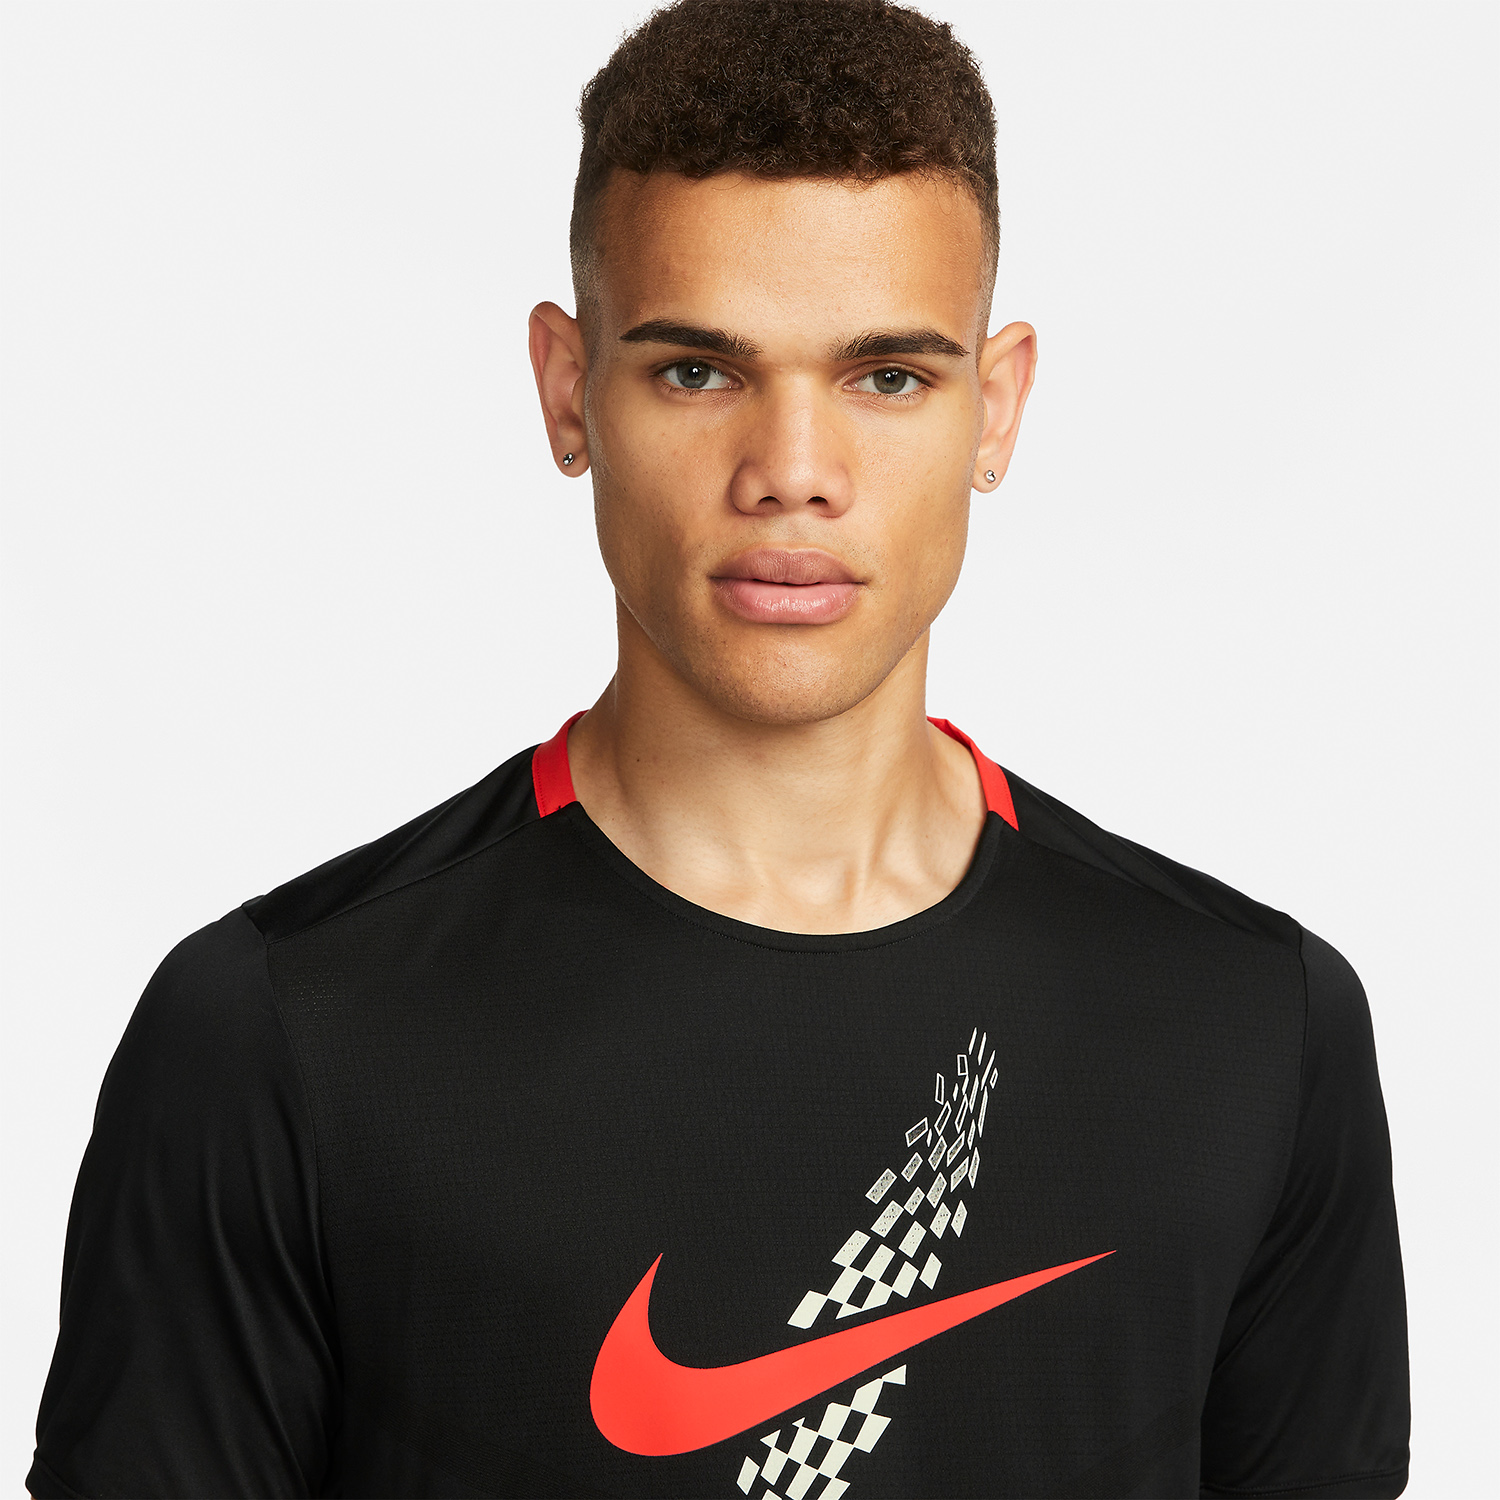 Nike Dri-FIT Rise 365 Eliud Kipchoge T-Shirt - Black